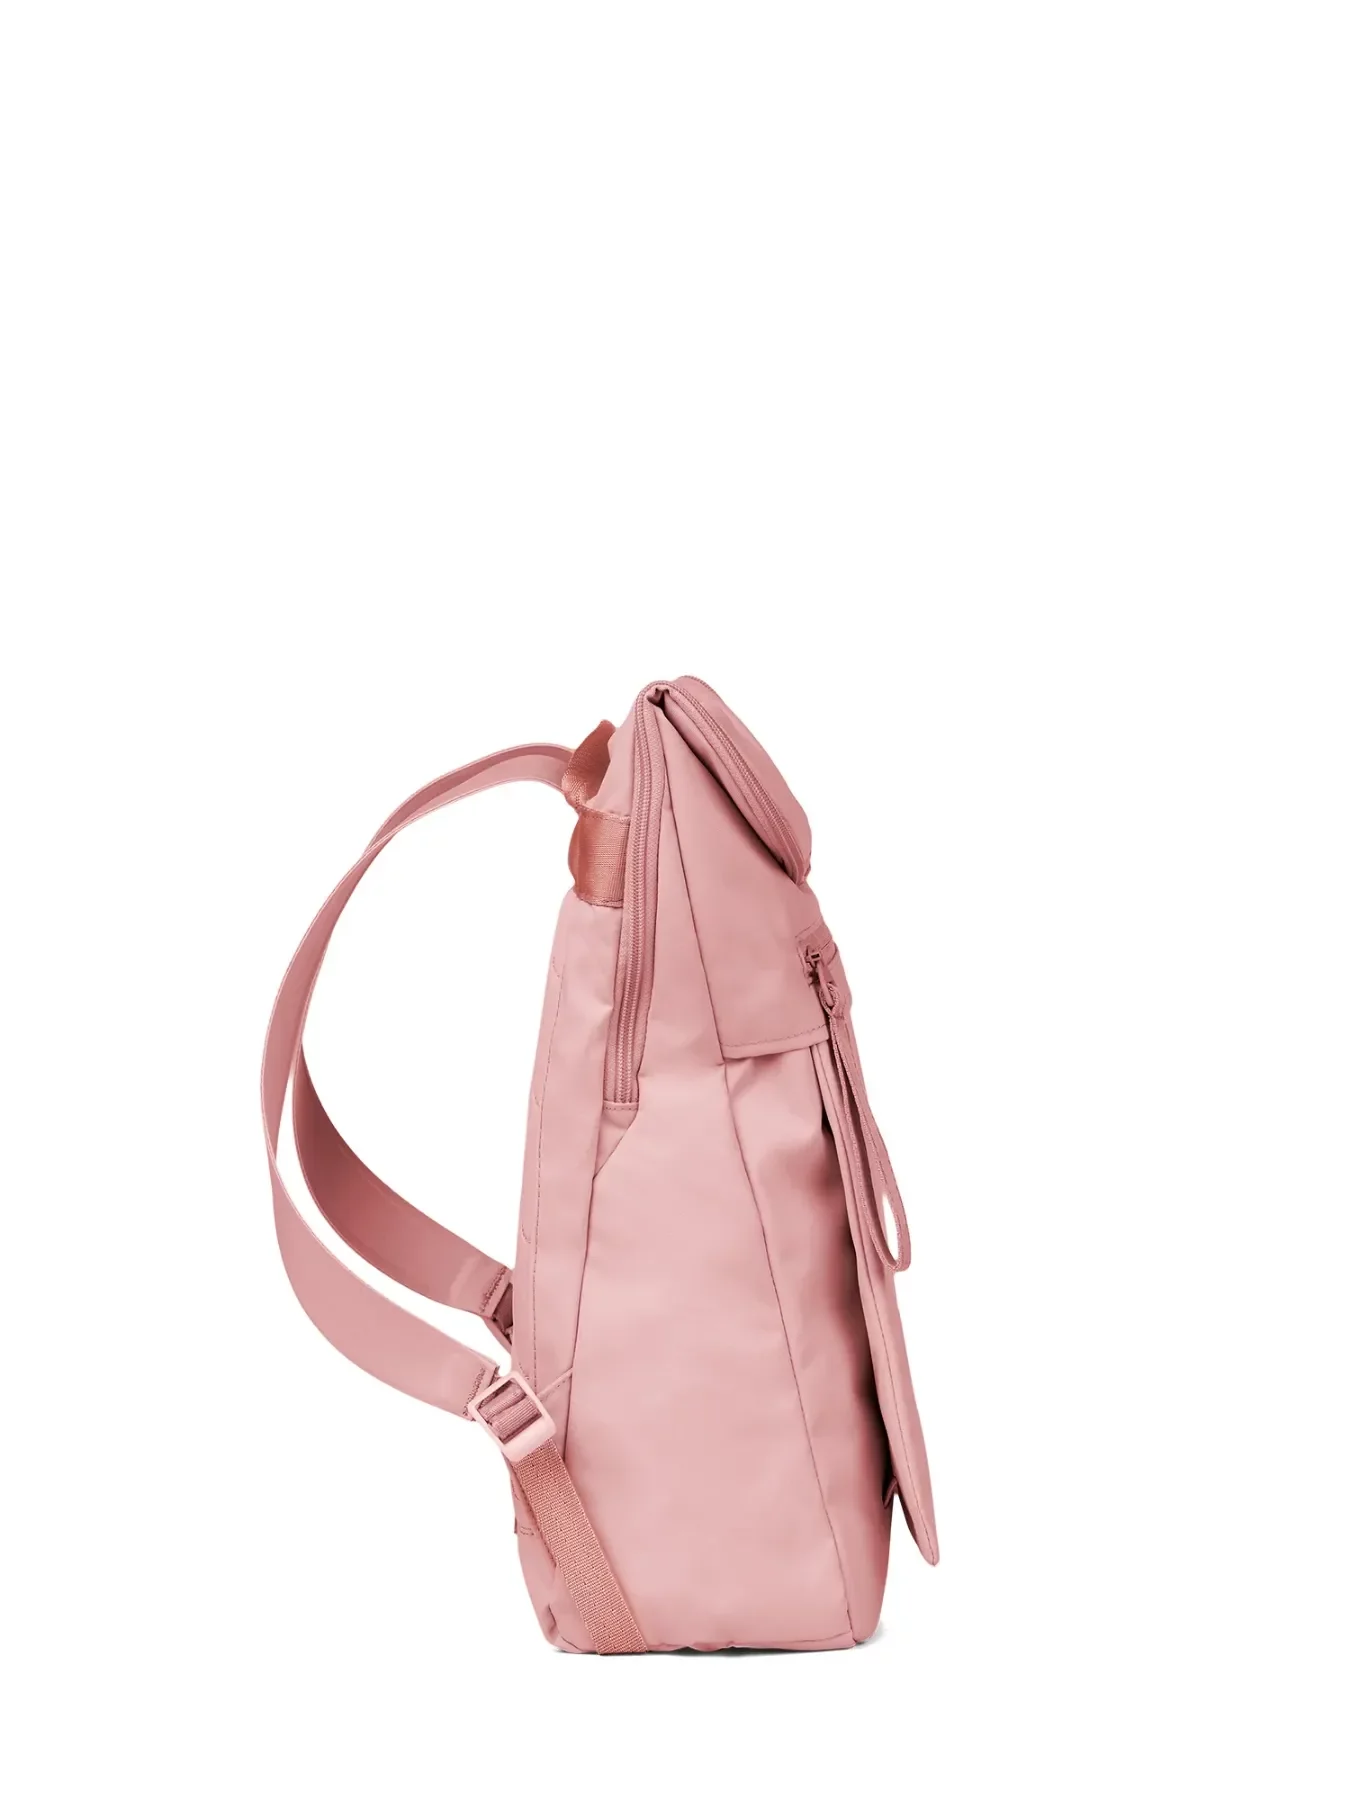 pinqponq Backpack KLAK - Ash Pink 2